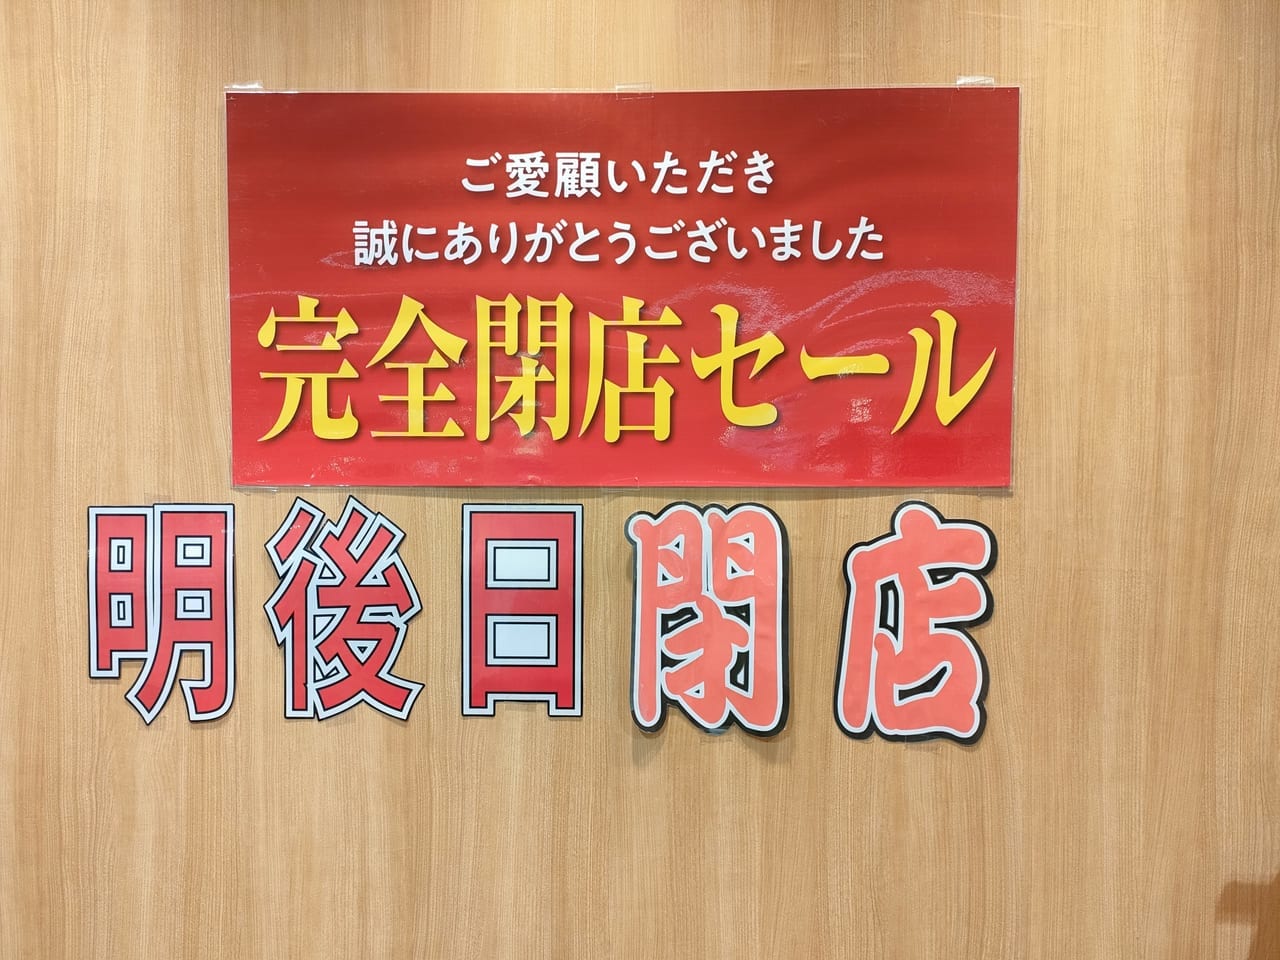 ラスカ平塚4階にある雑貨店「アップクリエイト」が8月31日（水）に閉店するようです。